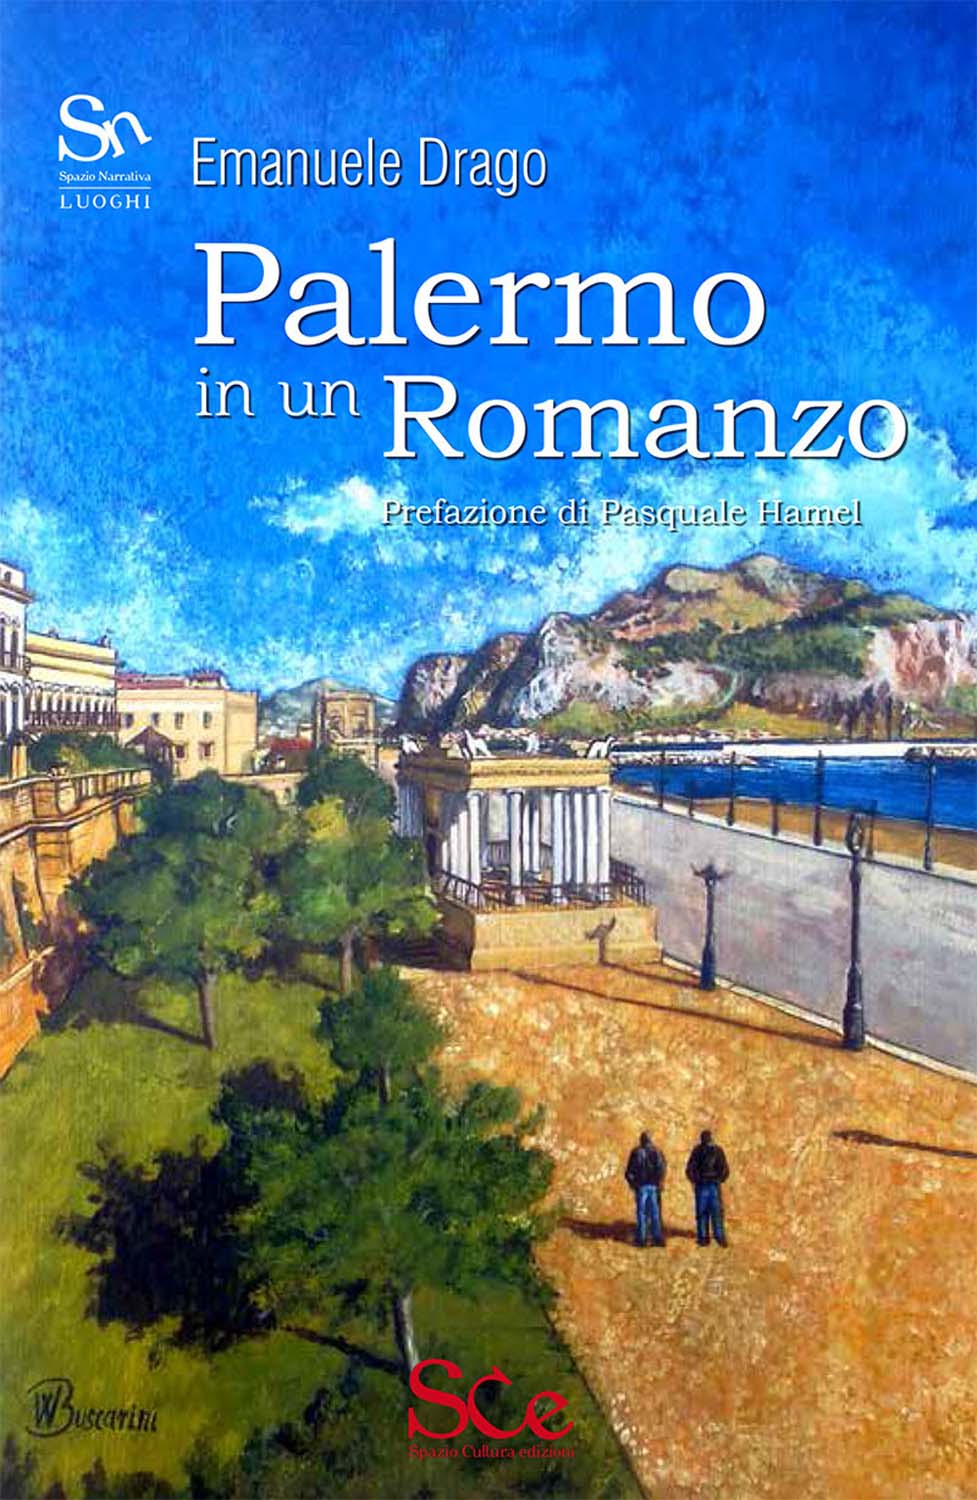 Libri Emanuele Drago - Palermo In Un Romanzo NUOVO SIGILLATO, EDIZIONE DEL 15/10/2015 SUBITO DISPONIBILE